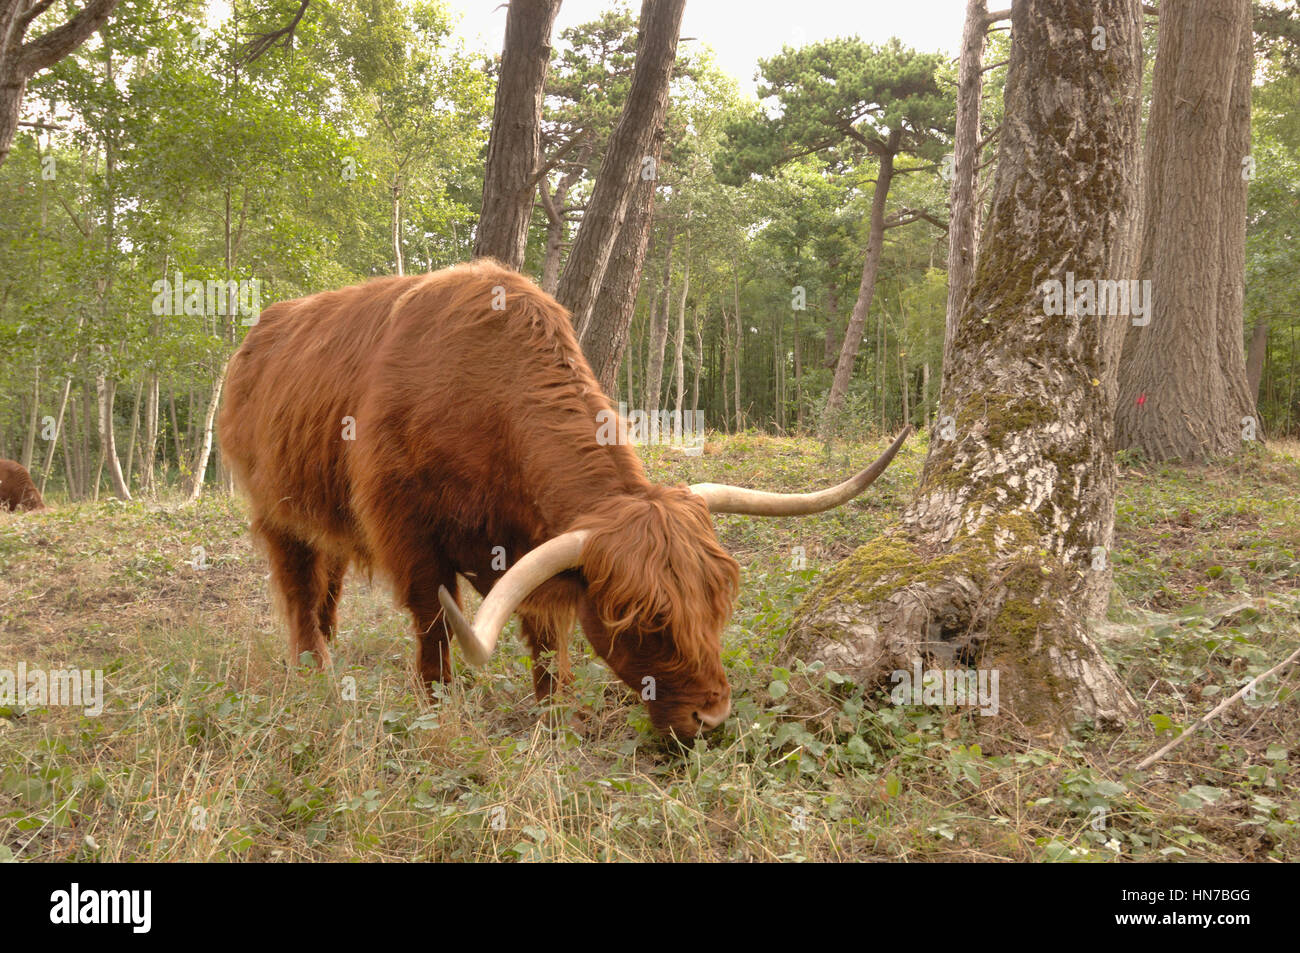 HIghland Cattle Bos taurus photographié dans la réserve naturelle, France Banque D'Images